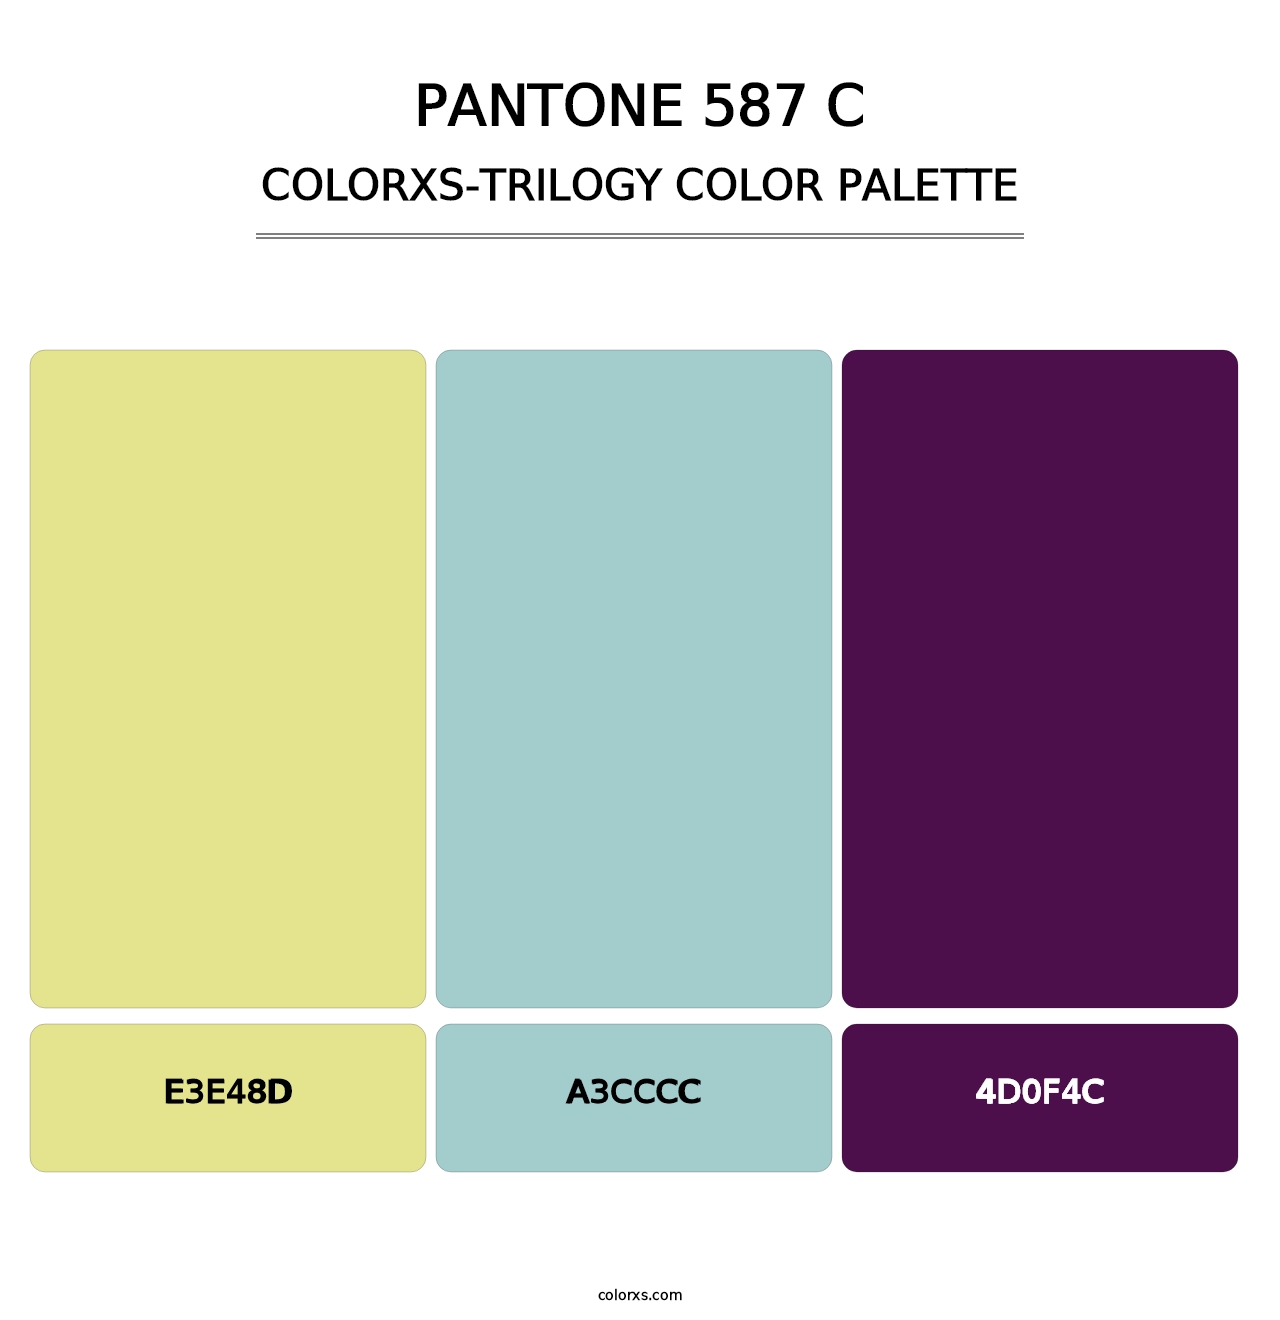 PANTONE 587 C - Colorxs Trilogy Palette